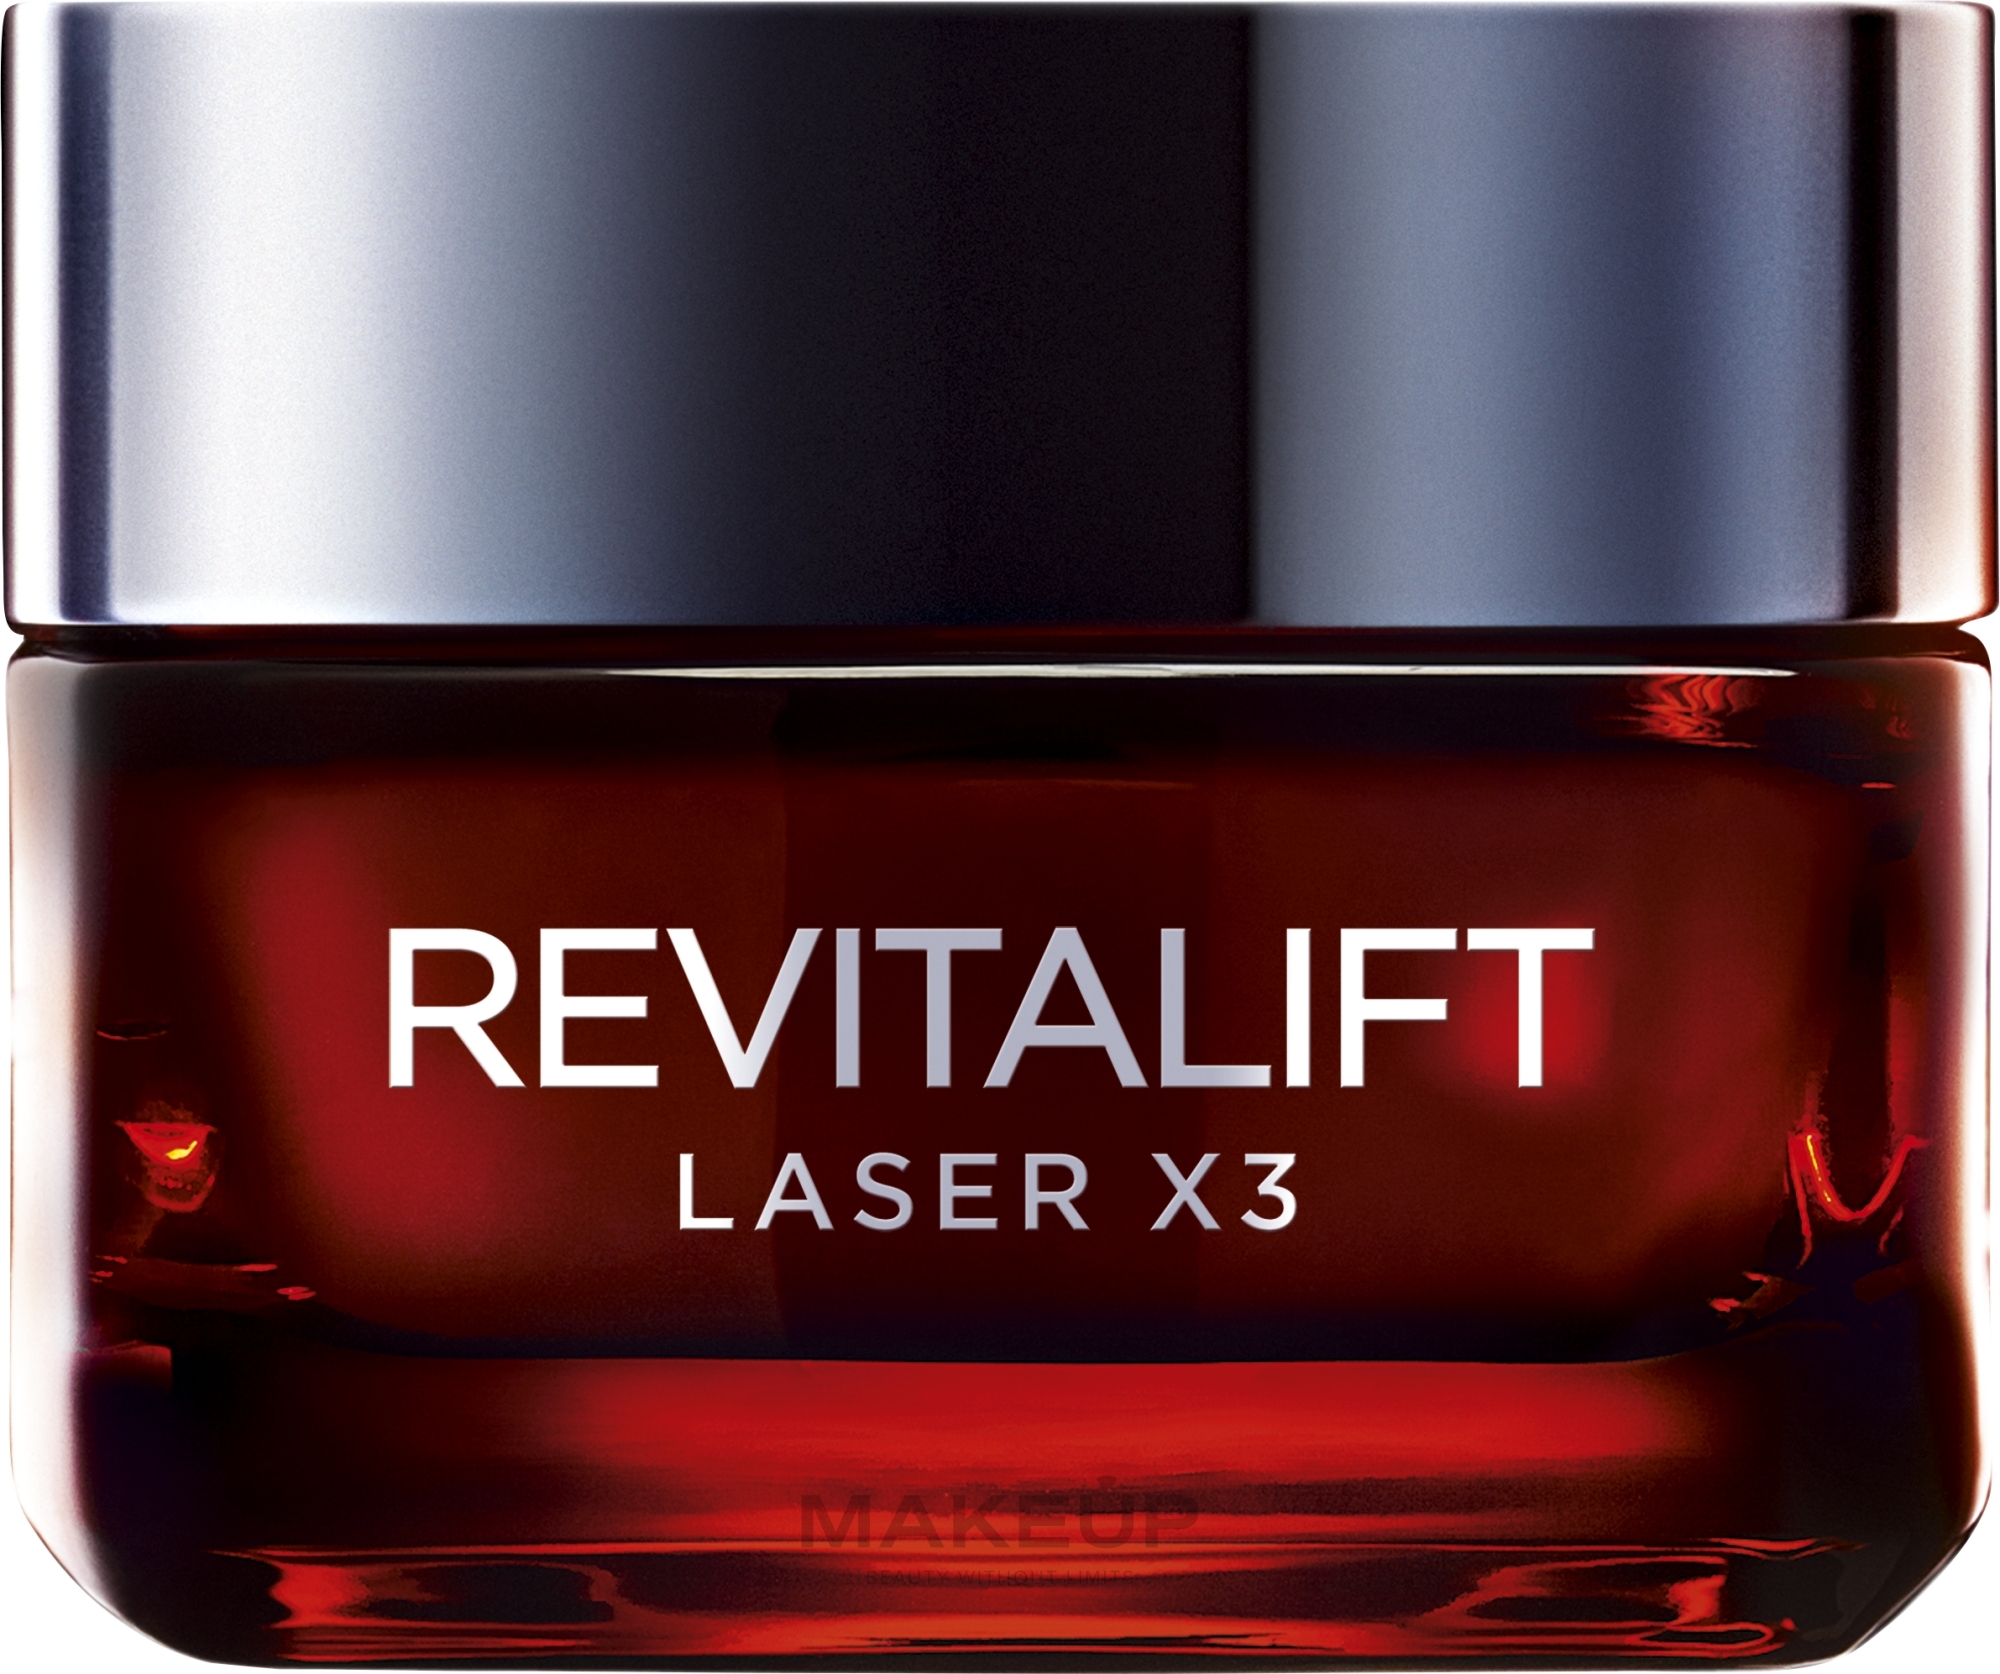 Krem anti-age na dzień Głęboka regeneracja - L'Oreal Paris Revitalift Laser X3 Anti-Age Day Cream — Zdjęcie 50 ml